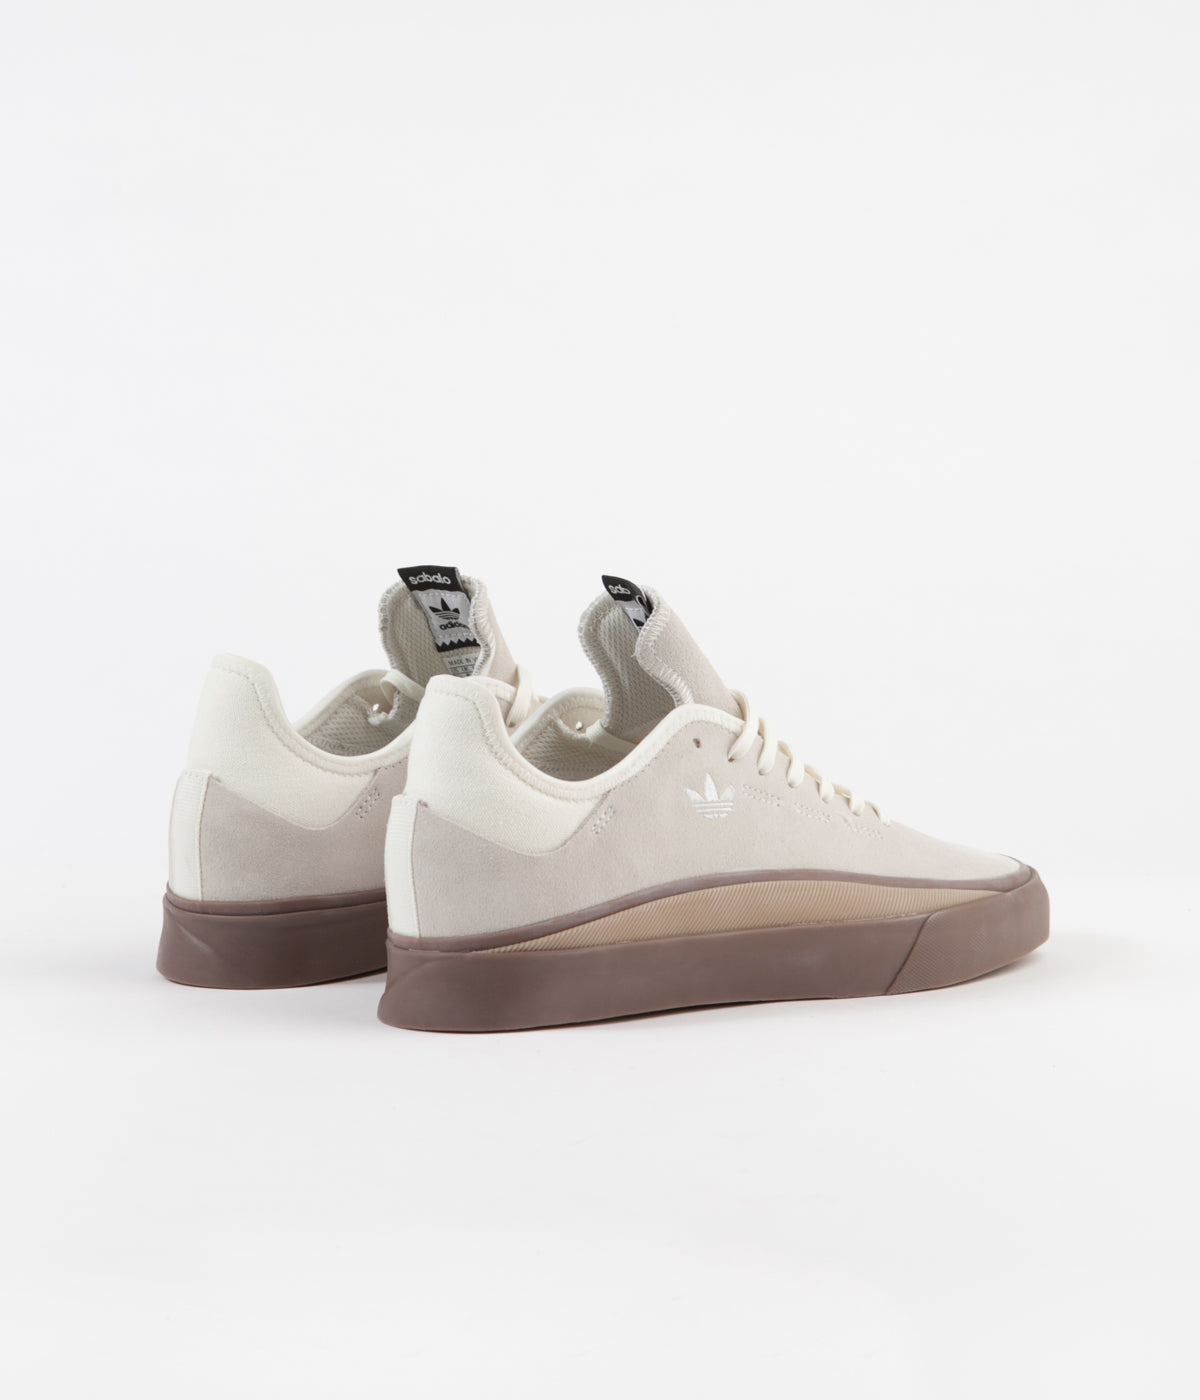 Adidas Sabalo Off White / Gum4 / Gum5 | Flatspot